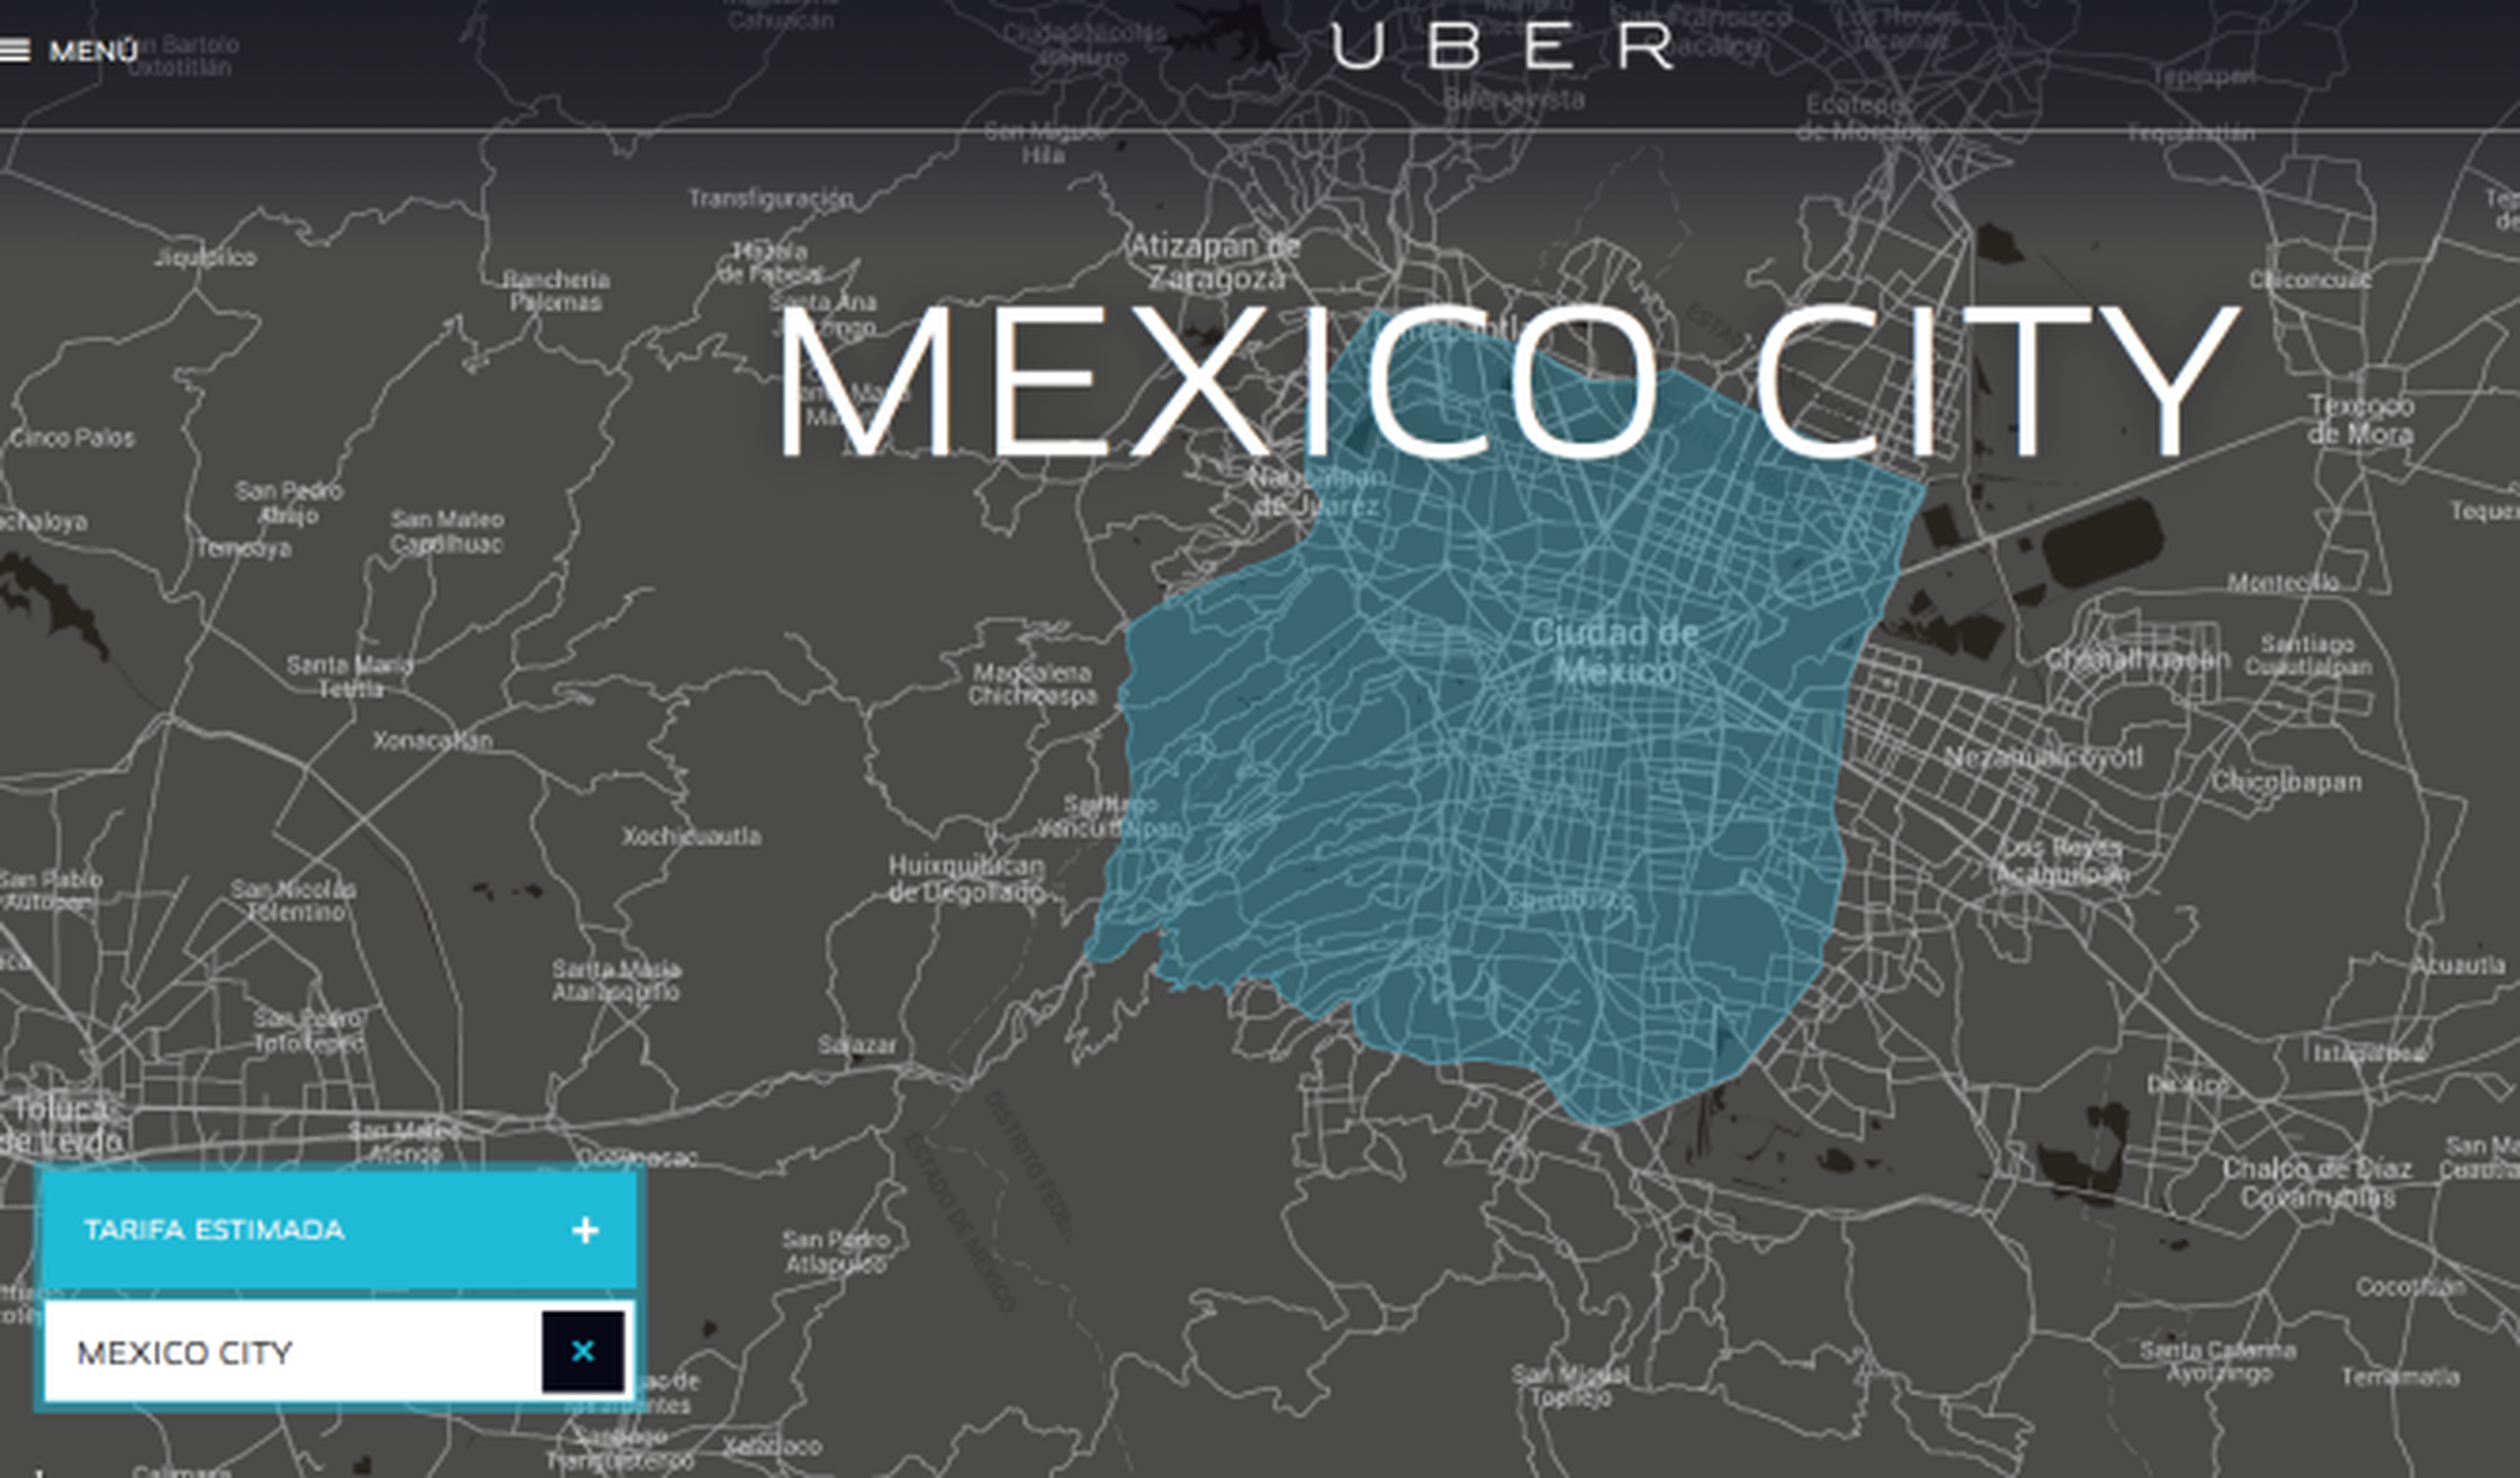 Uber da viajes gratis en México durante una huelga de taxis